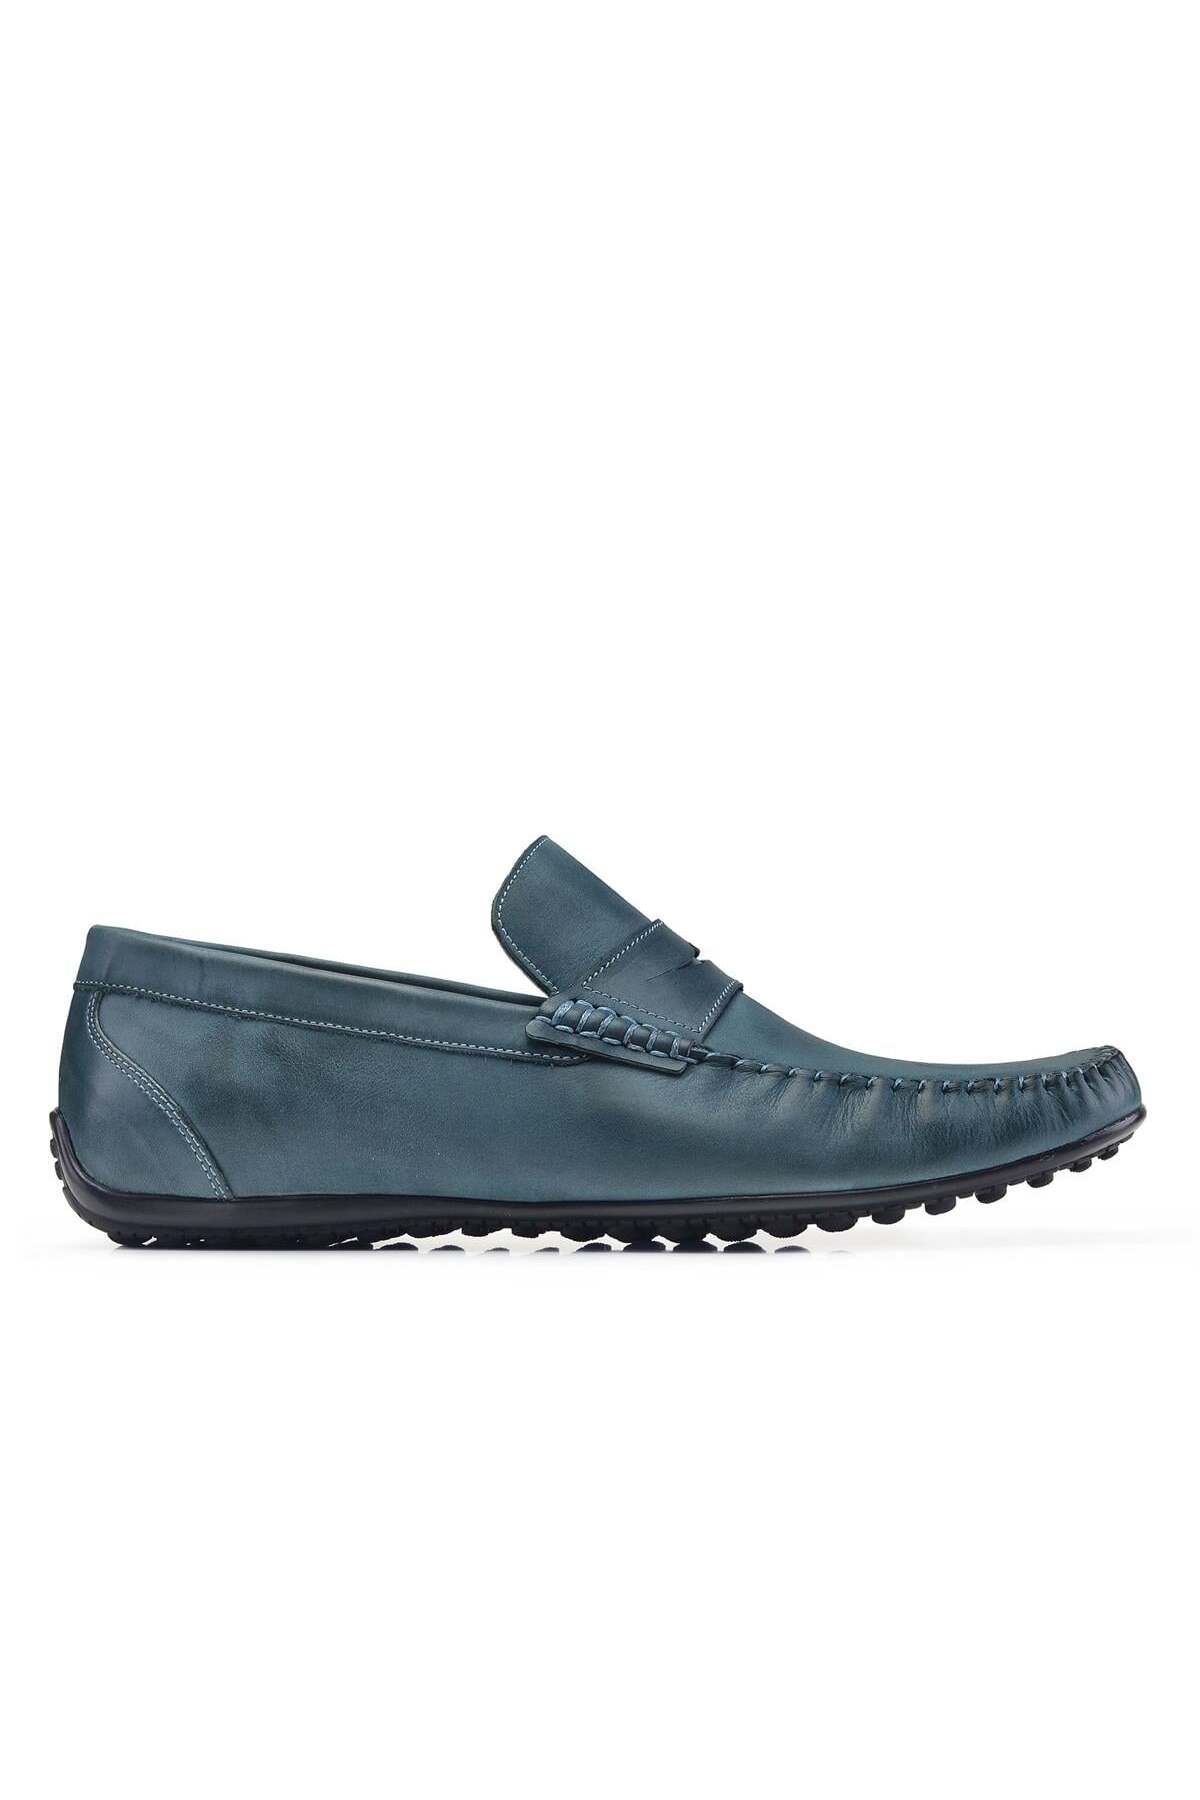 Nevzat Onay Nubuk Mavi Yazlık Loafer Erkek Ayakkabı -22922-